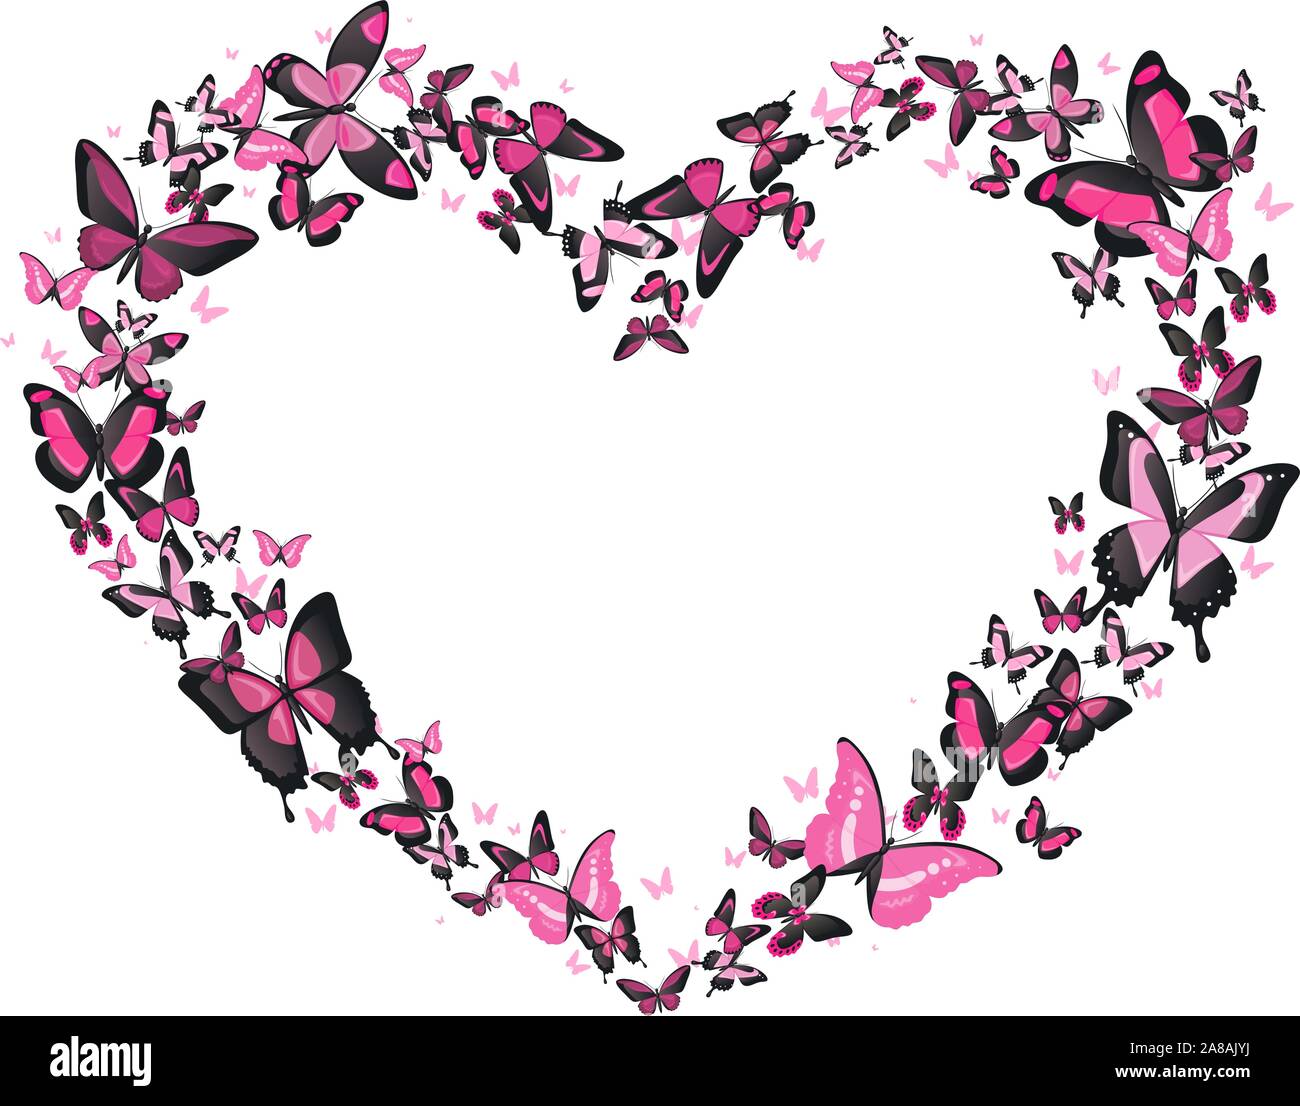 A forma di cuore il volo delle farfalle, rosa e nero vettore di farfalle a forma di cuore ad illustrazione. Romantico ed elegante. Illustrazione Vettoriale